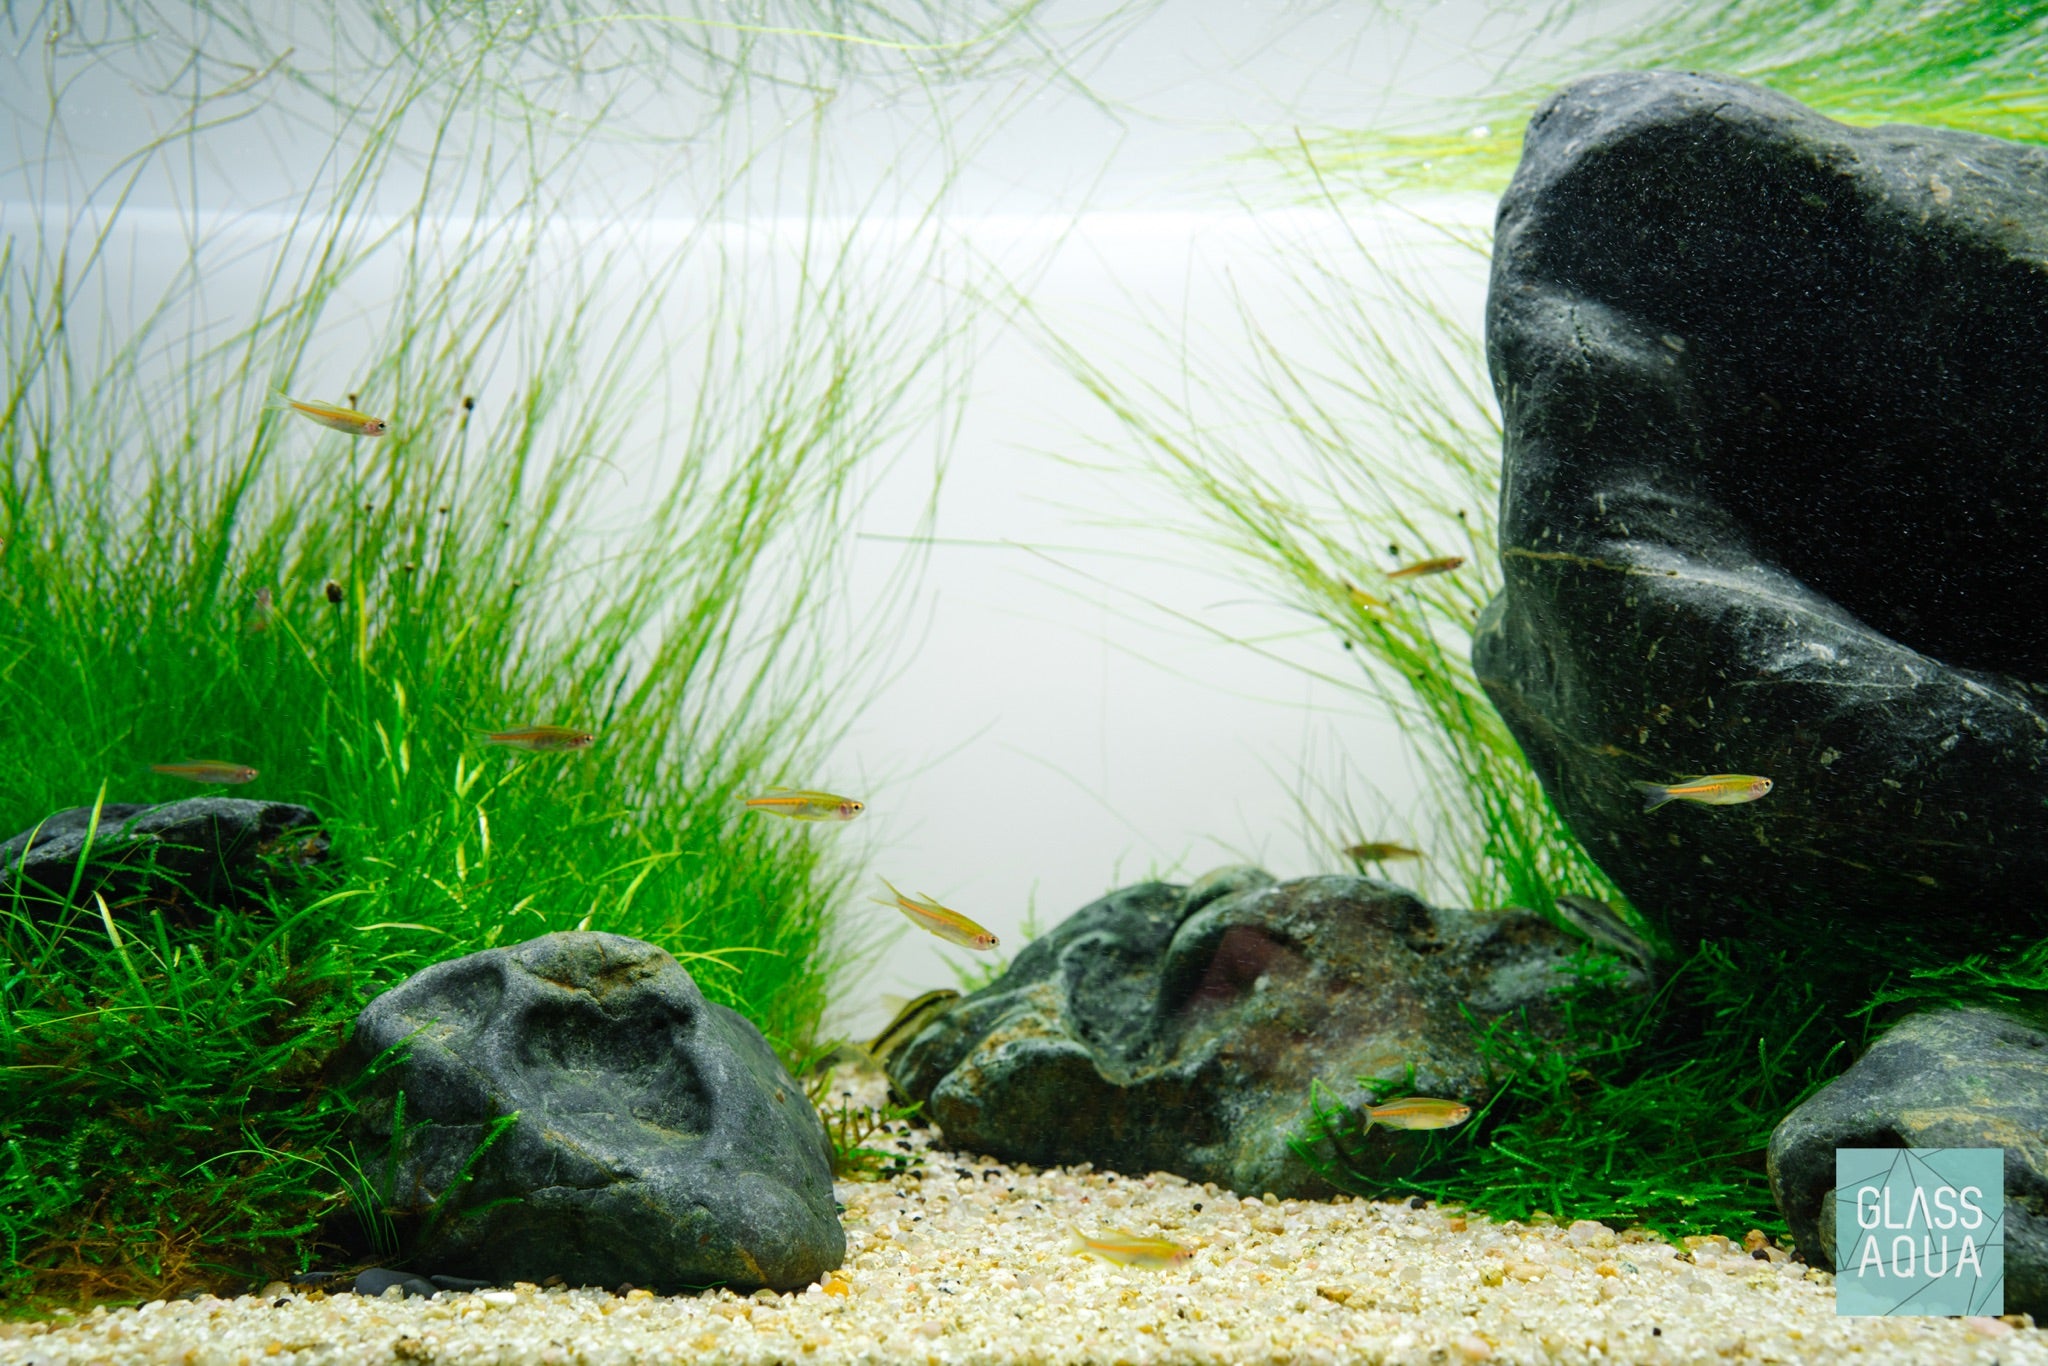 Dragon Stone Aquarium Aquascape Landscape Bonsai Fish Tank Decorations -   Canada